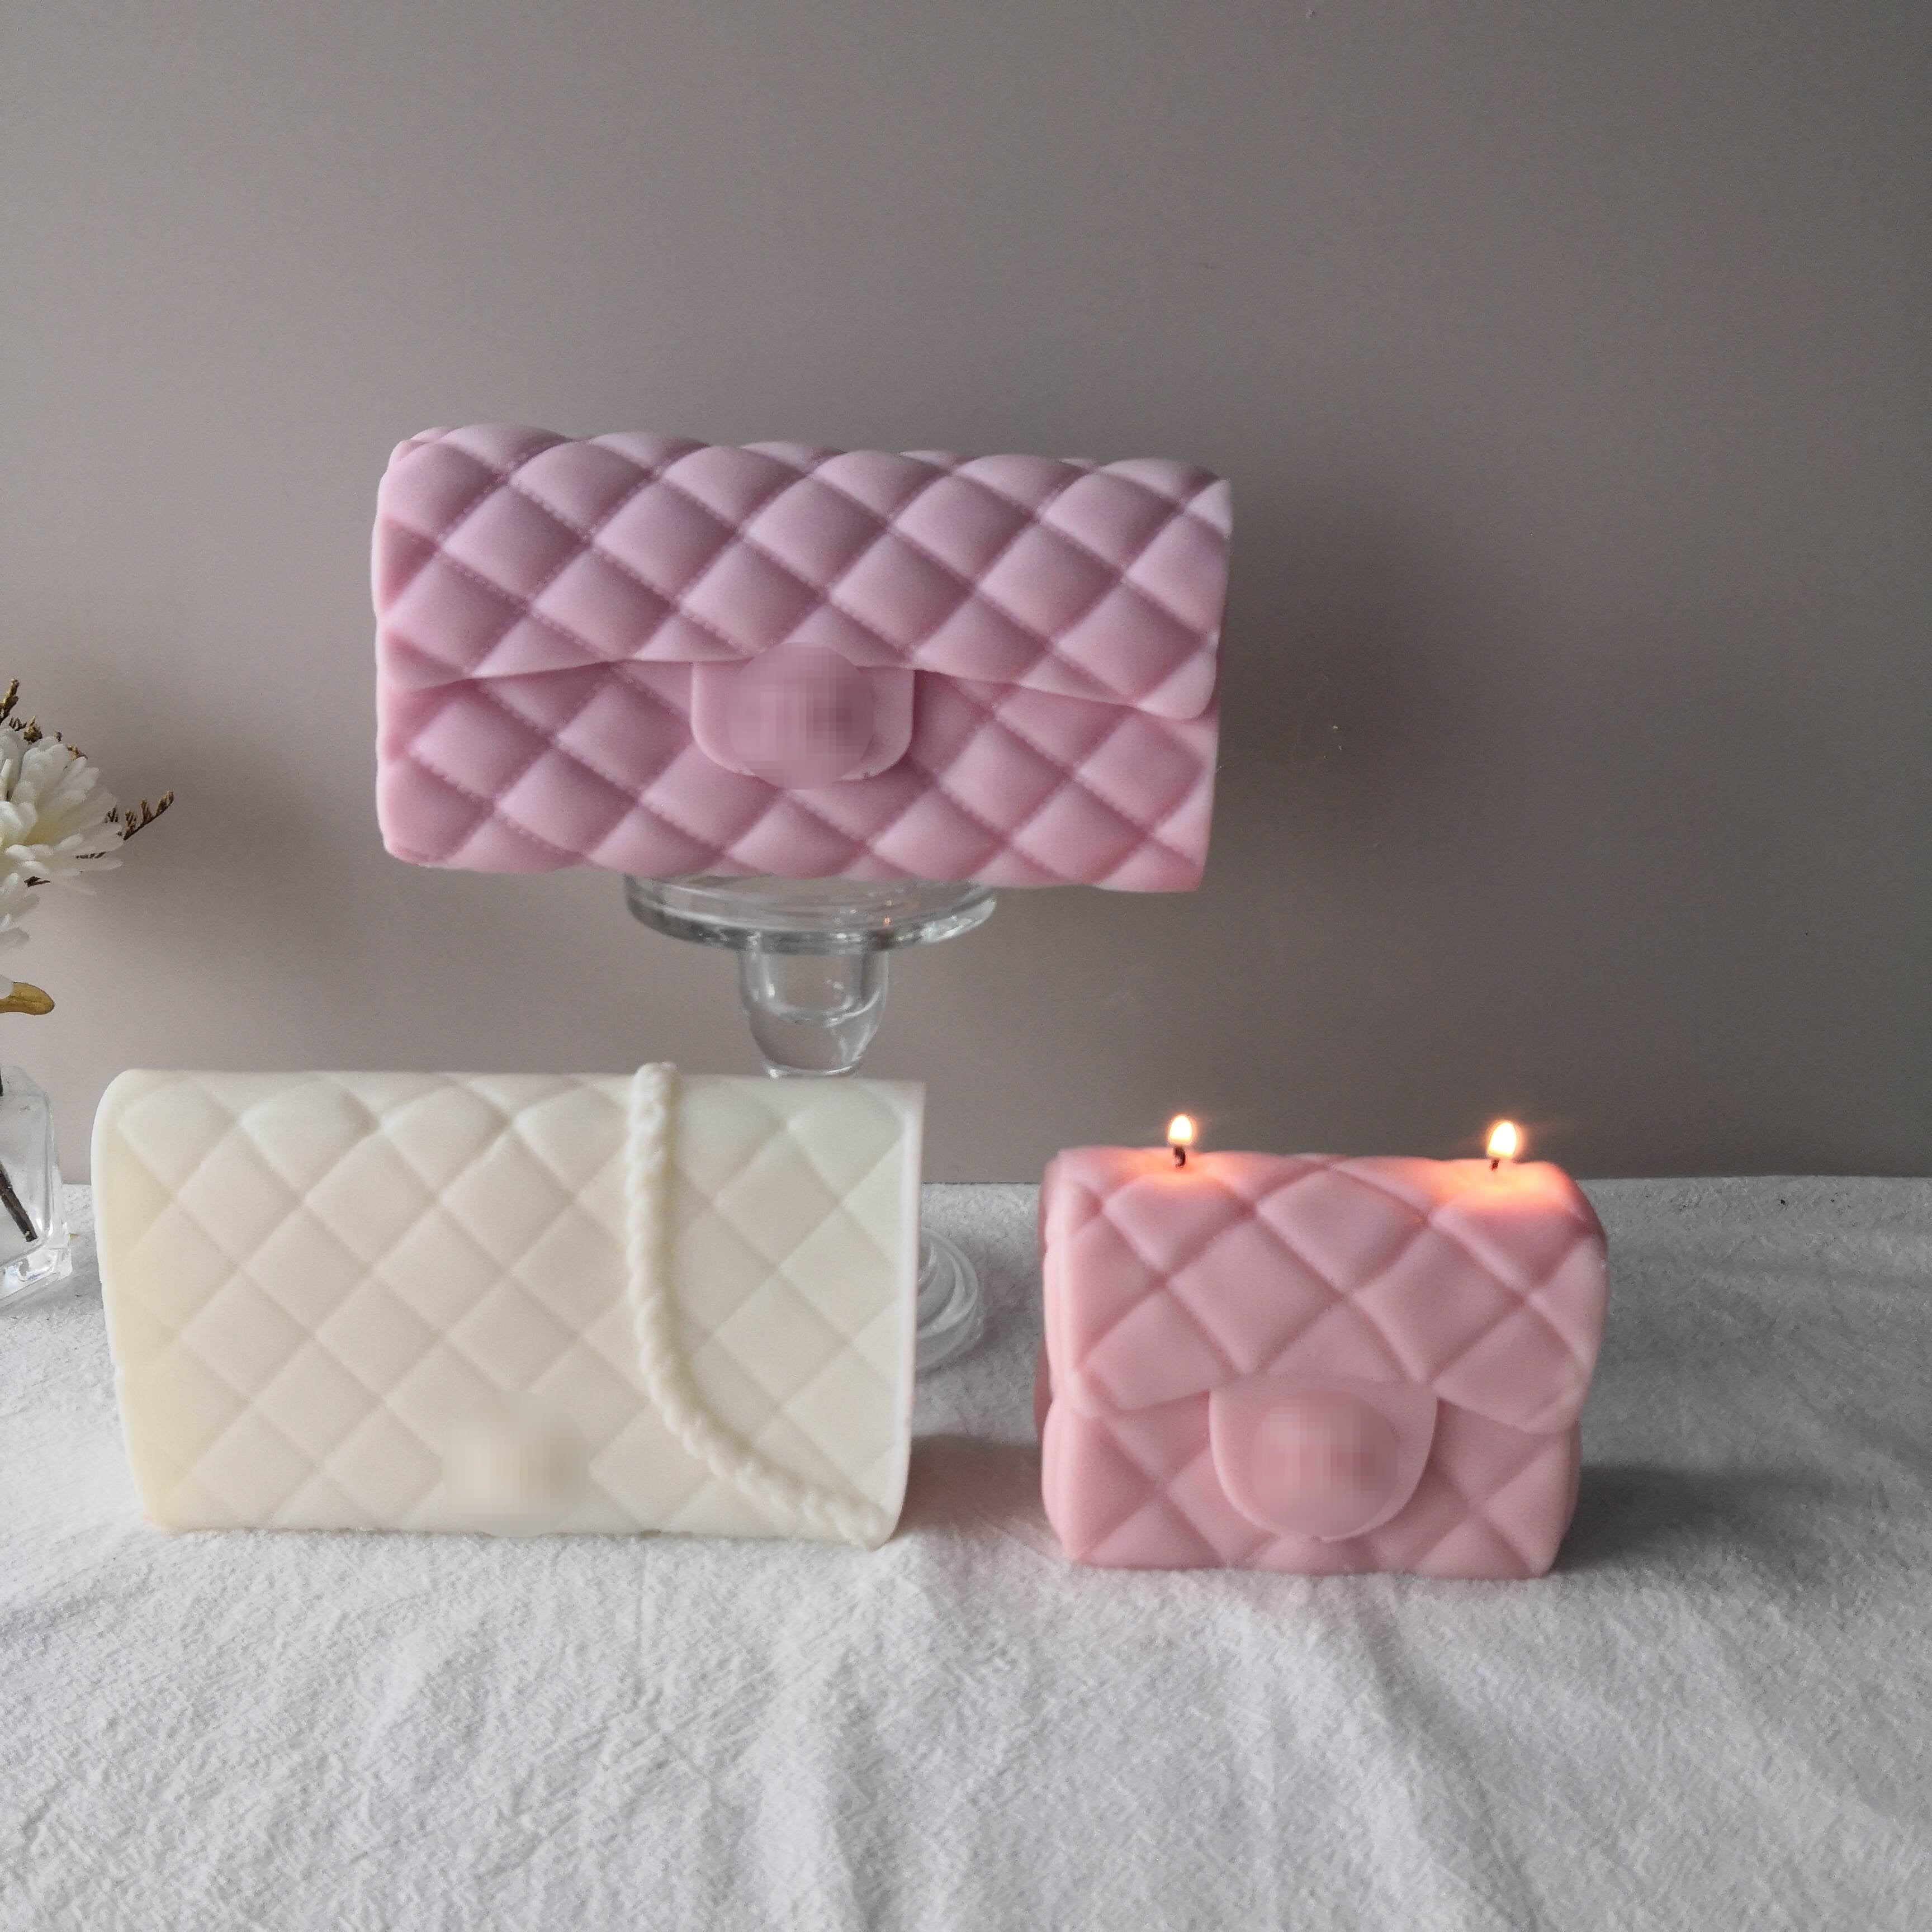 LV Handbag Mould – Myka Candles & Moulds